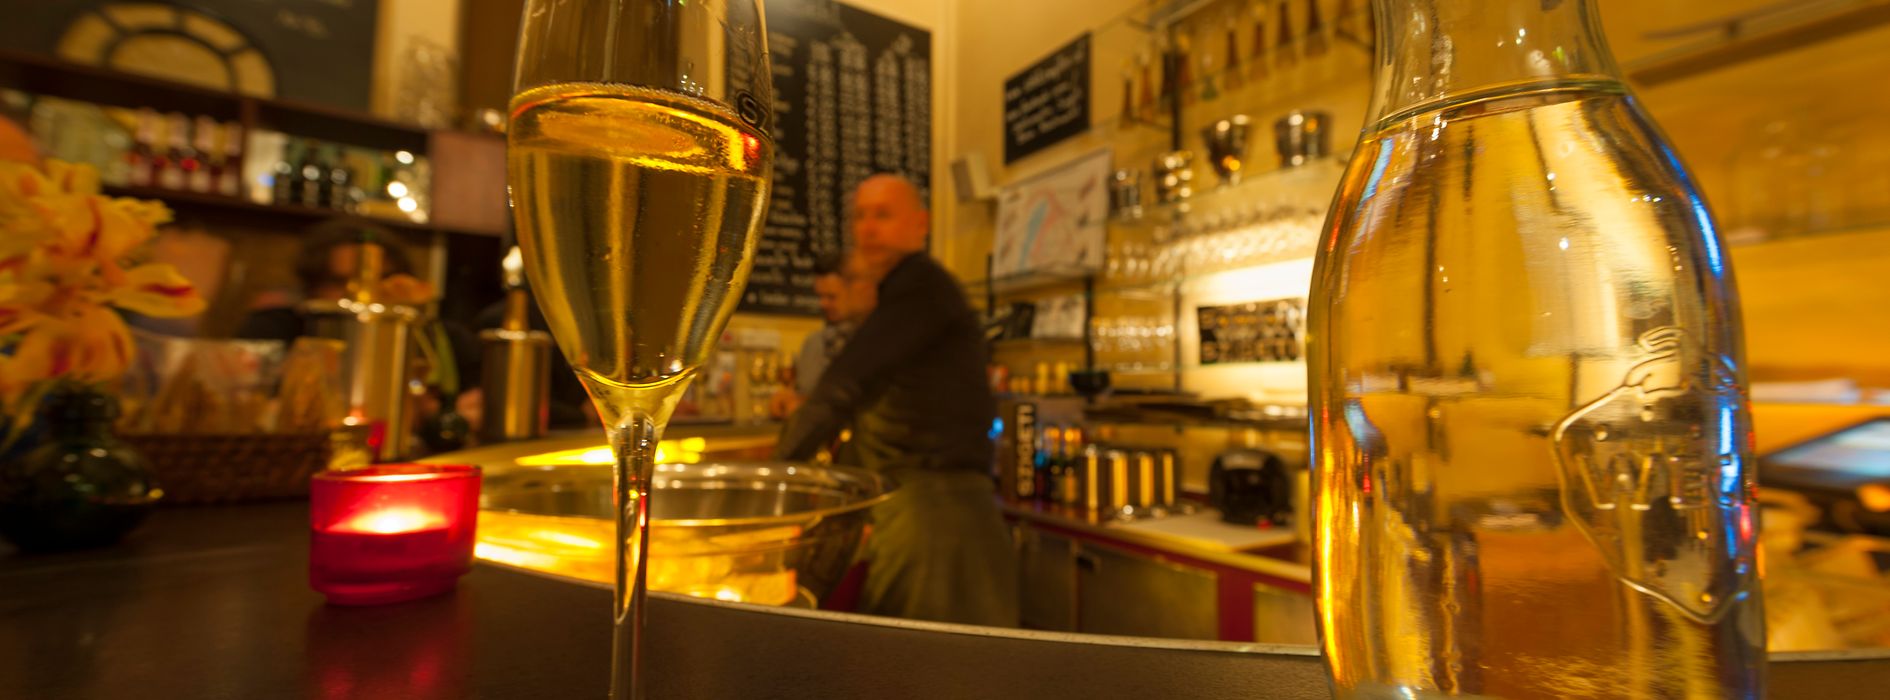 Barul de vin spumant Szigeti, vedere din interior cu un pahar de vin spumant şi clienţi 